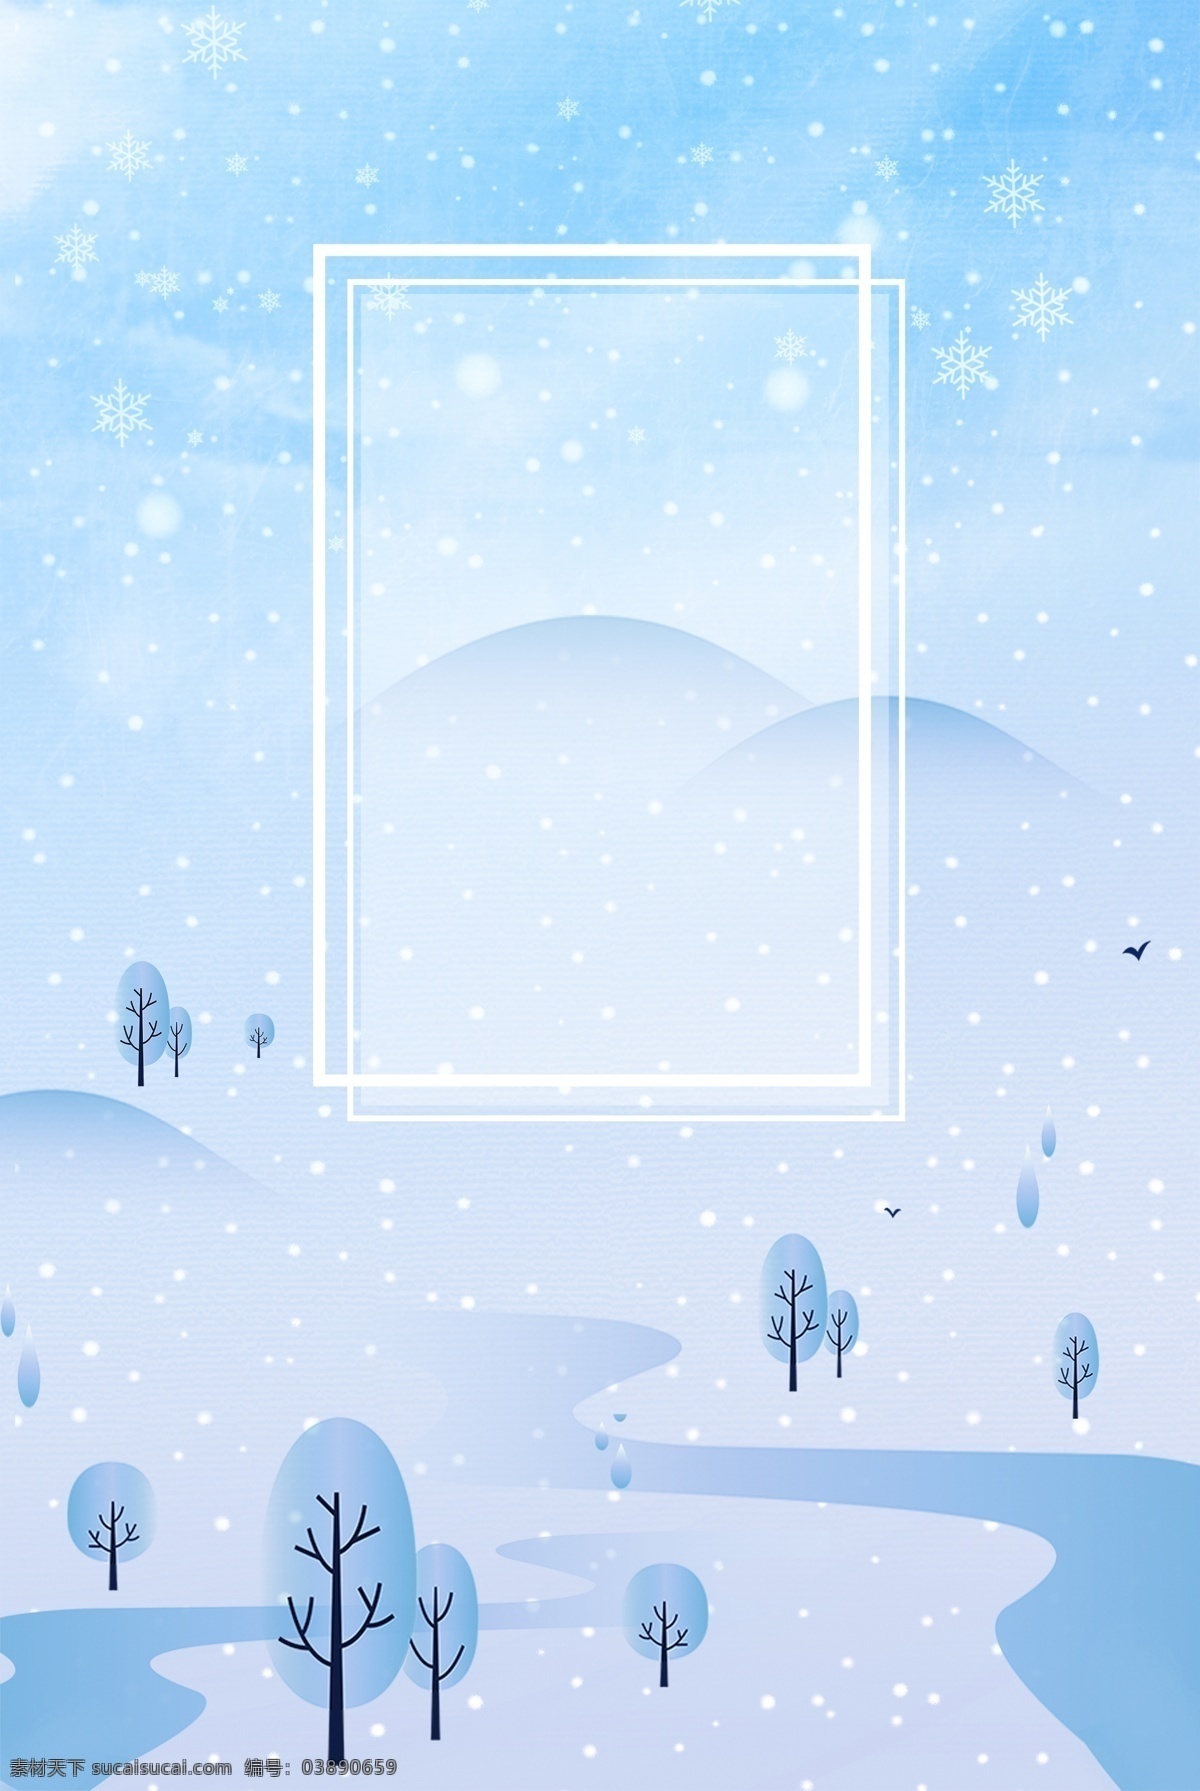 二十四节气 大寒 大雪 清新 简约 海报 传统 传统大雪 节气 冬季 雪景